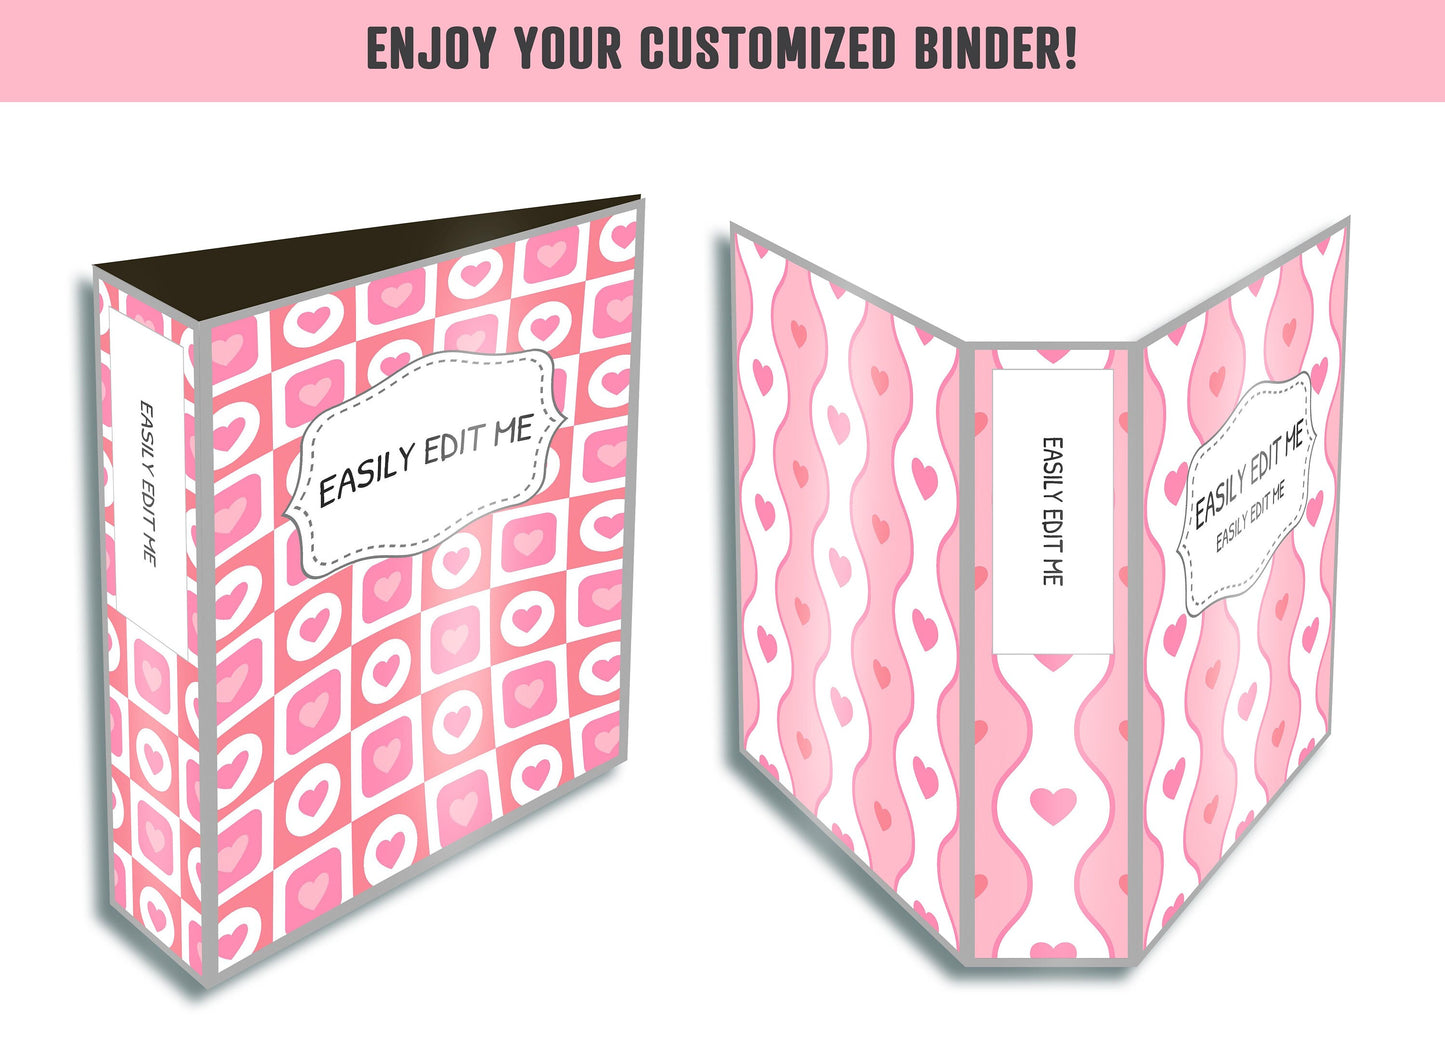 Valentine Binder Covers, 10 Printable & Editable Binder Covers+Spines, Binder Insert, Planner Cover, Teacher/School Binder, Pink/Love/Heart